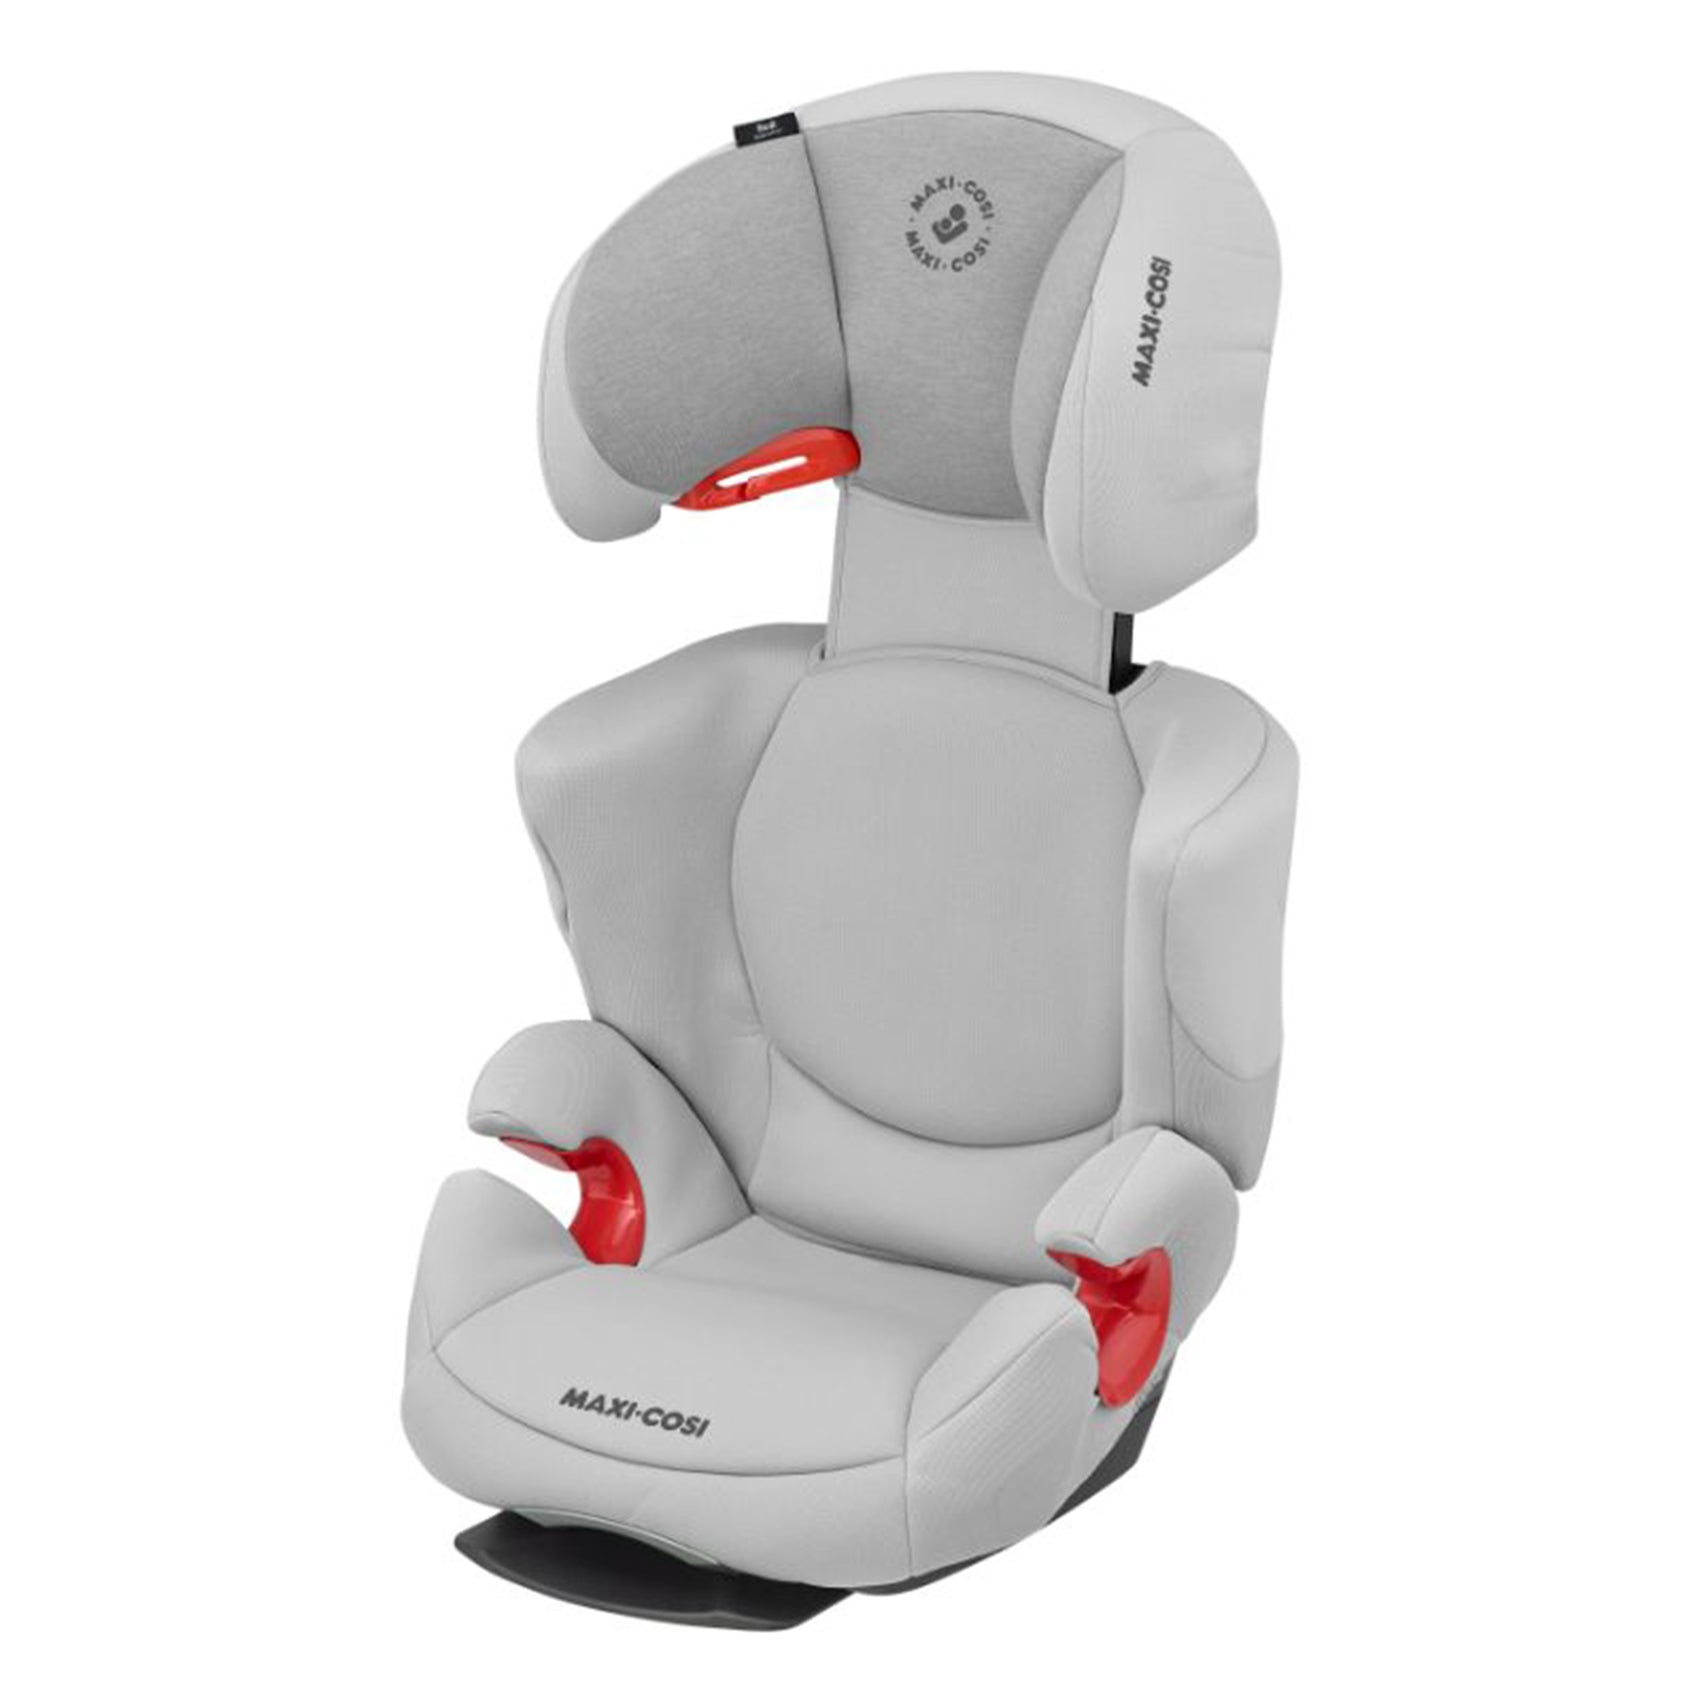 Maxi-Cosi Rodi AirProtect car seat - Car seats from 4 years - Car